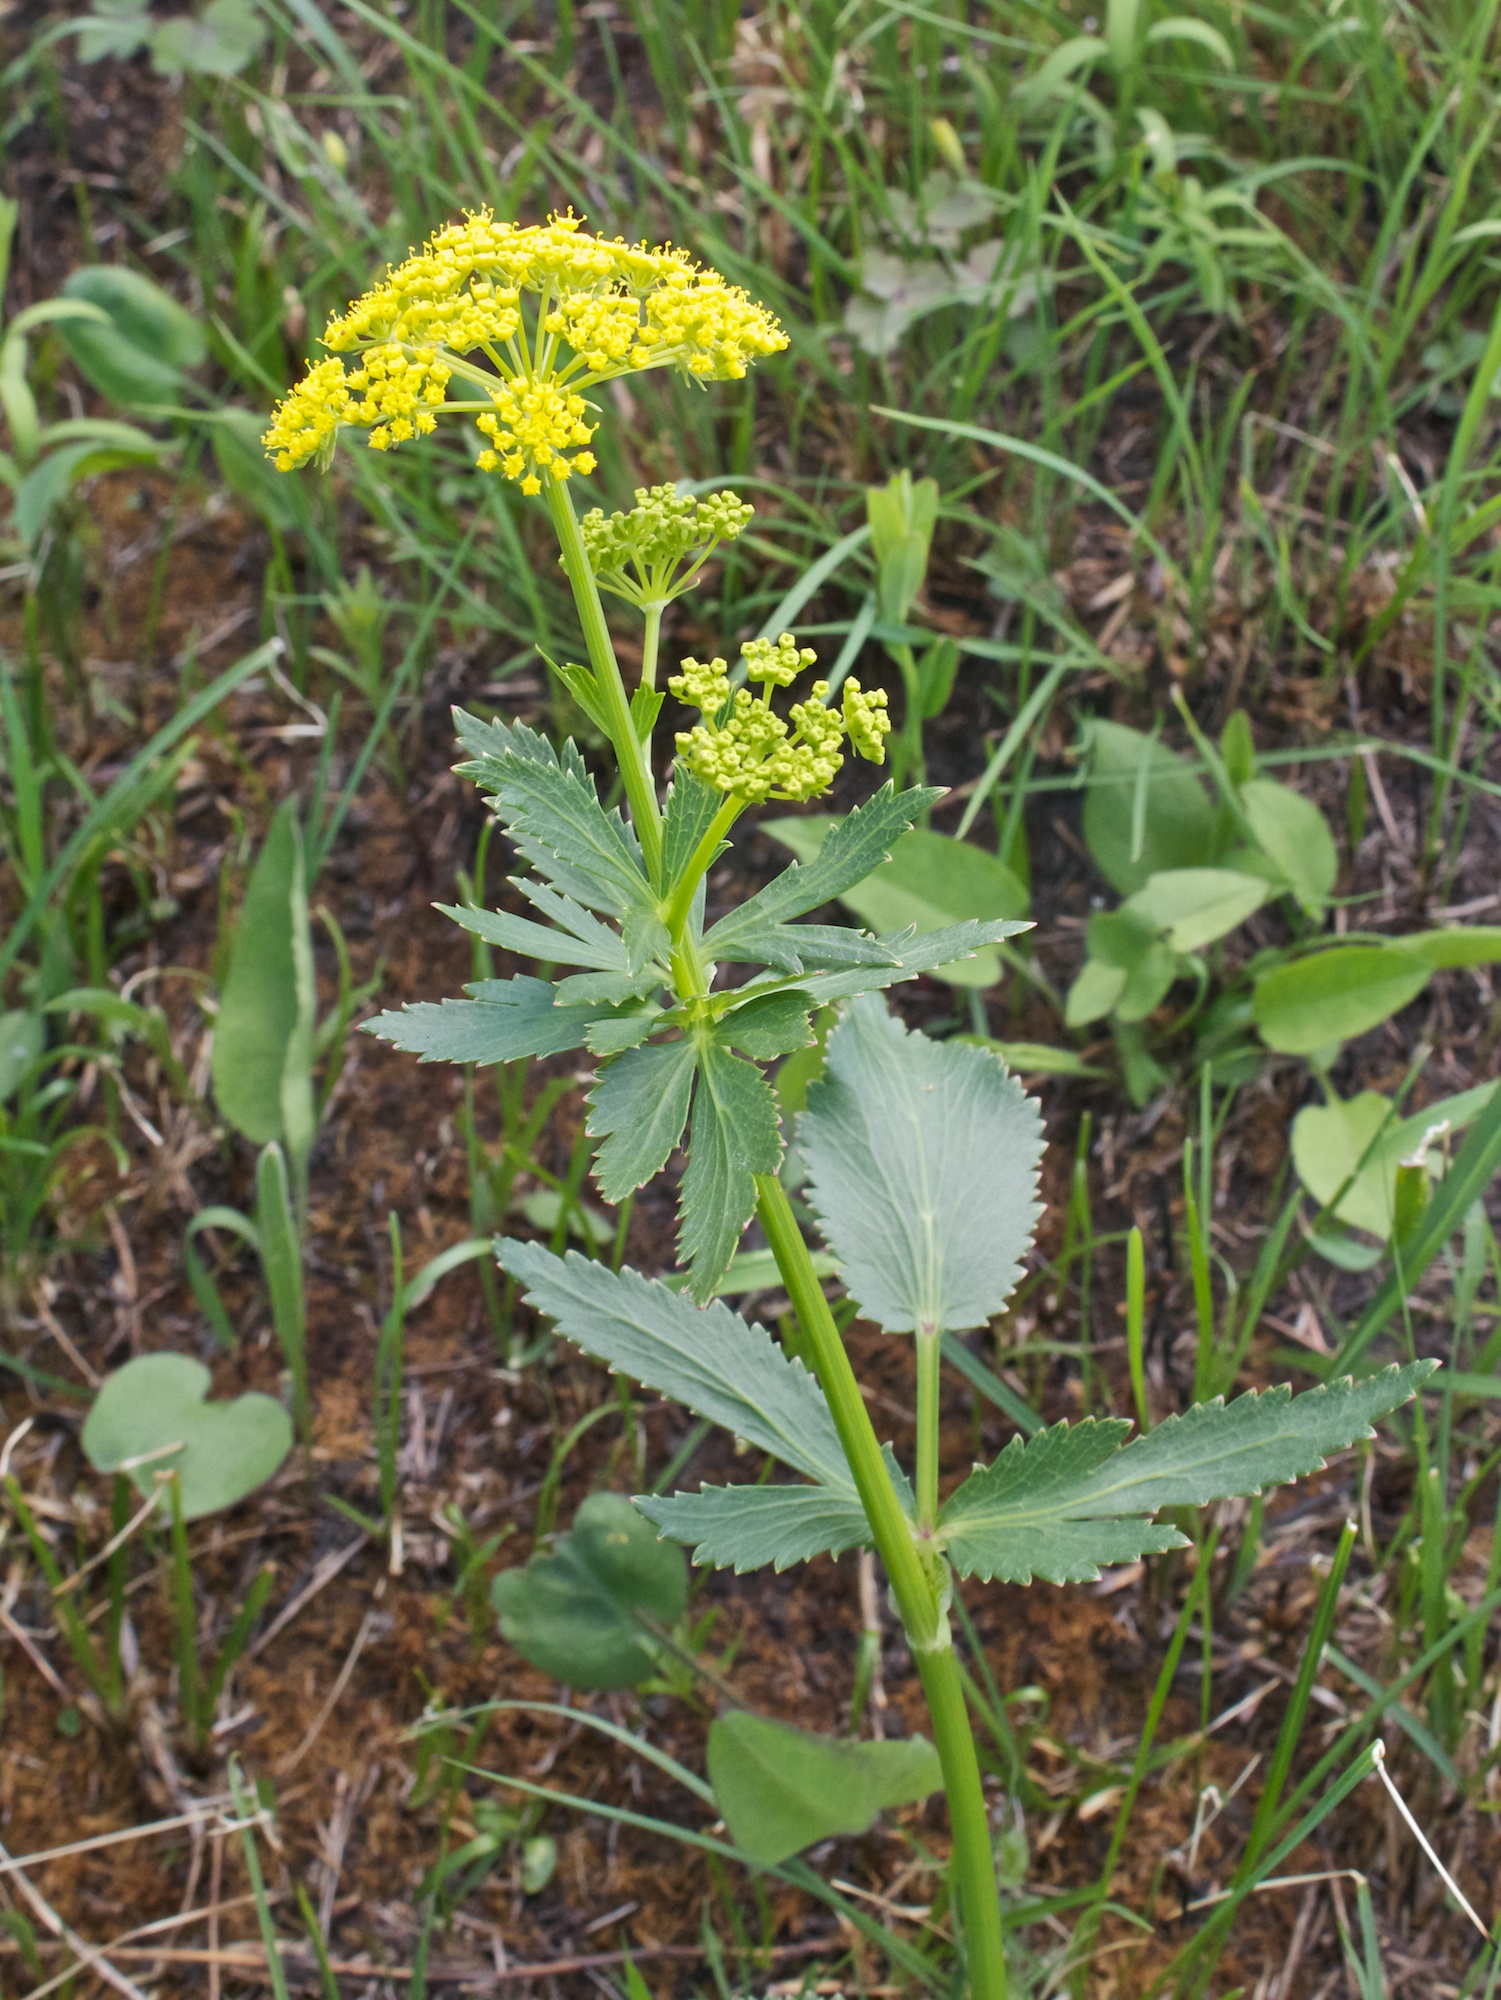 Wild parsnip (Pastinaca sativa) plant in situ